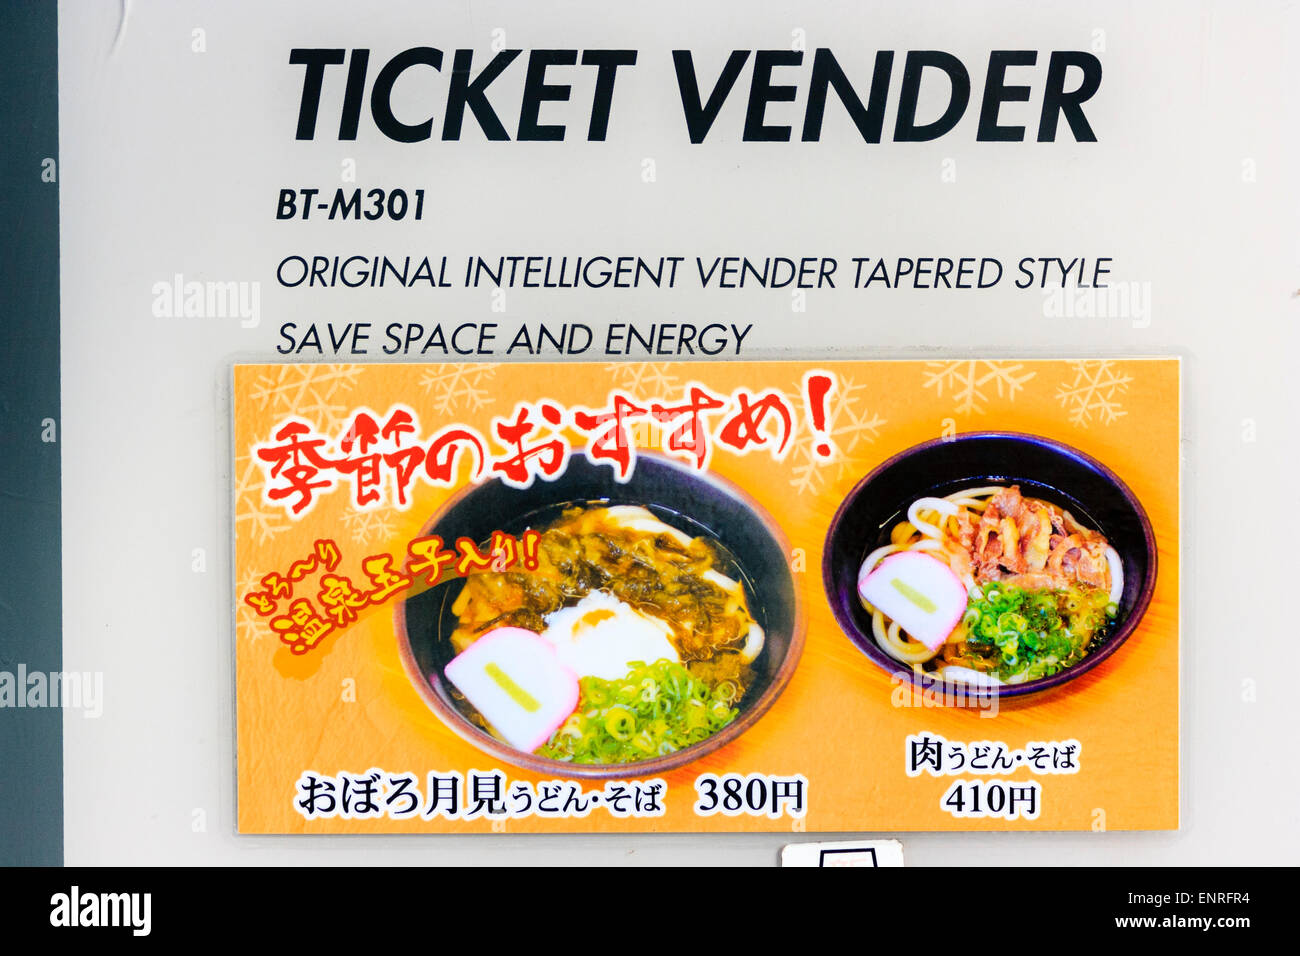 Japanisches Schild mit dem Ticketautomaten für warme Speisen, auf dem Fotos von zwei warmen Speisen und die Preise zu sehen sind. Stockfoto